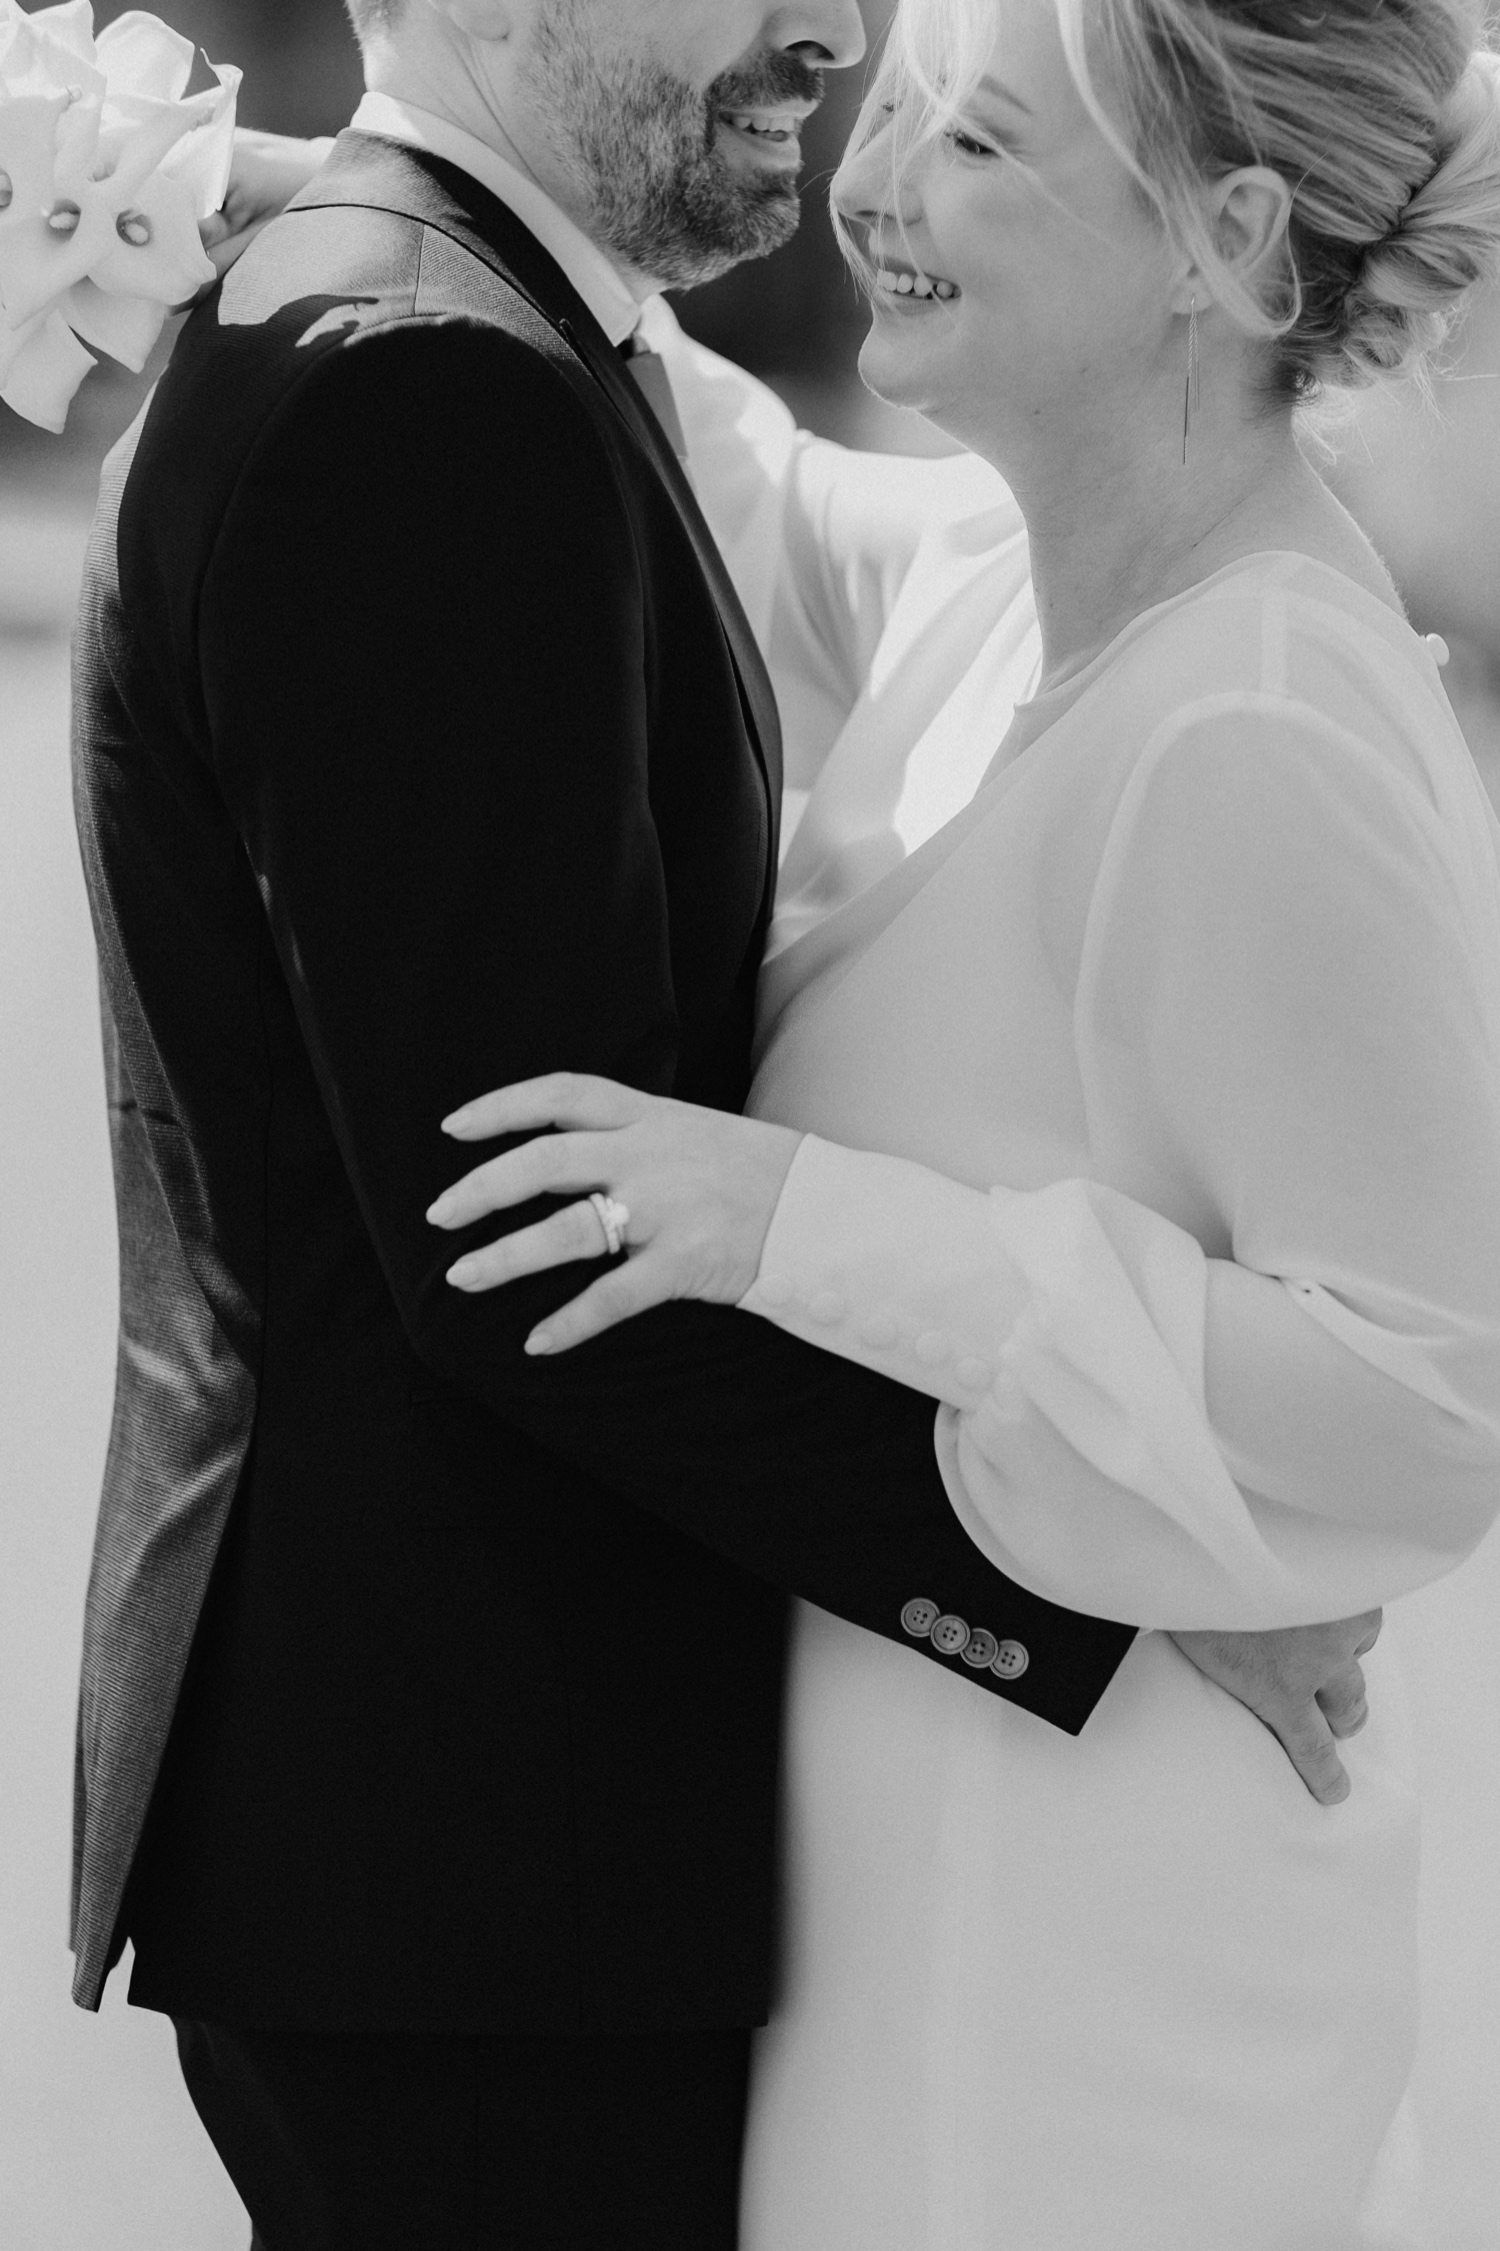 Huwelijksfotograaf Limburg - close-up van bruidspaar tijdens fotoshoot